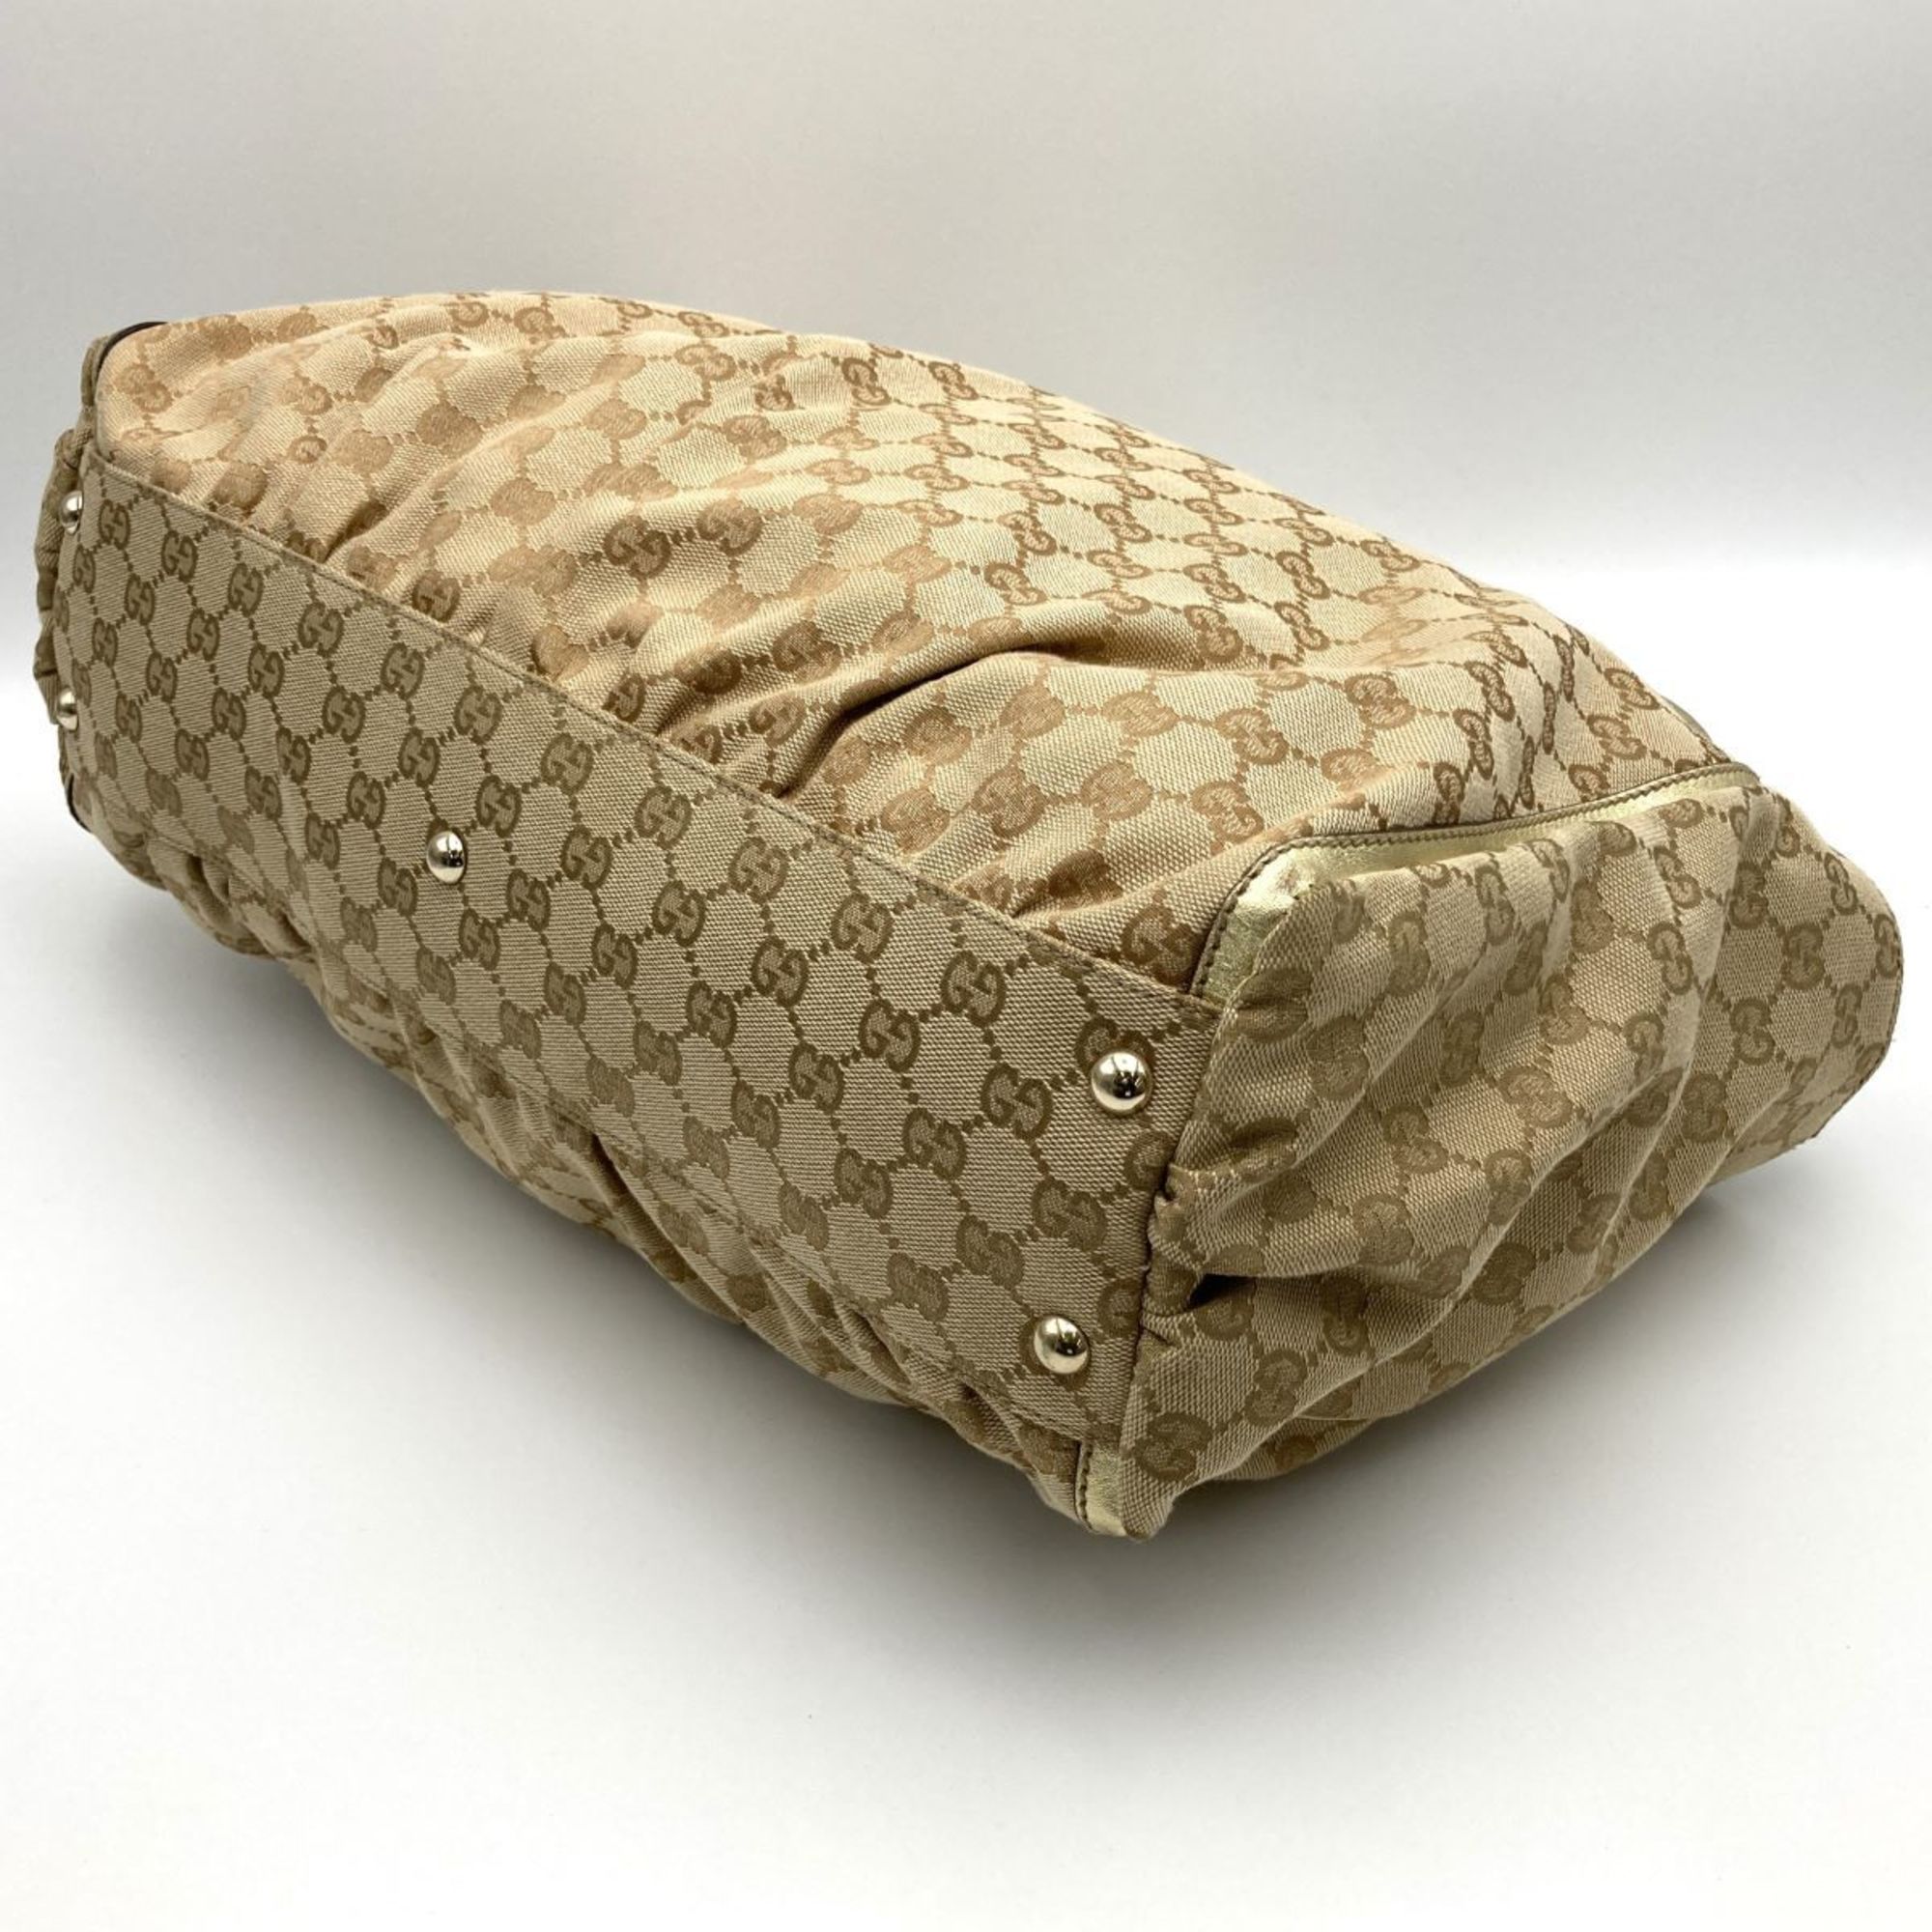 GUCCI 190248 Shoulder Bag Tote Handbag Beige Gold GG Canvas Leather Hardware Women's